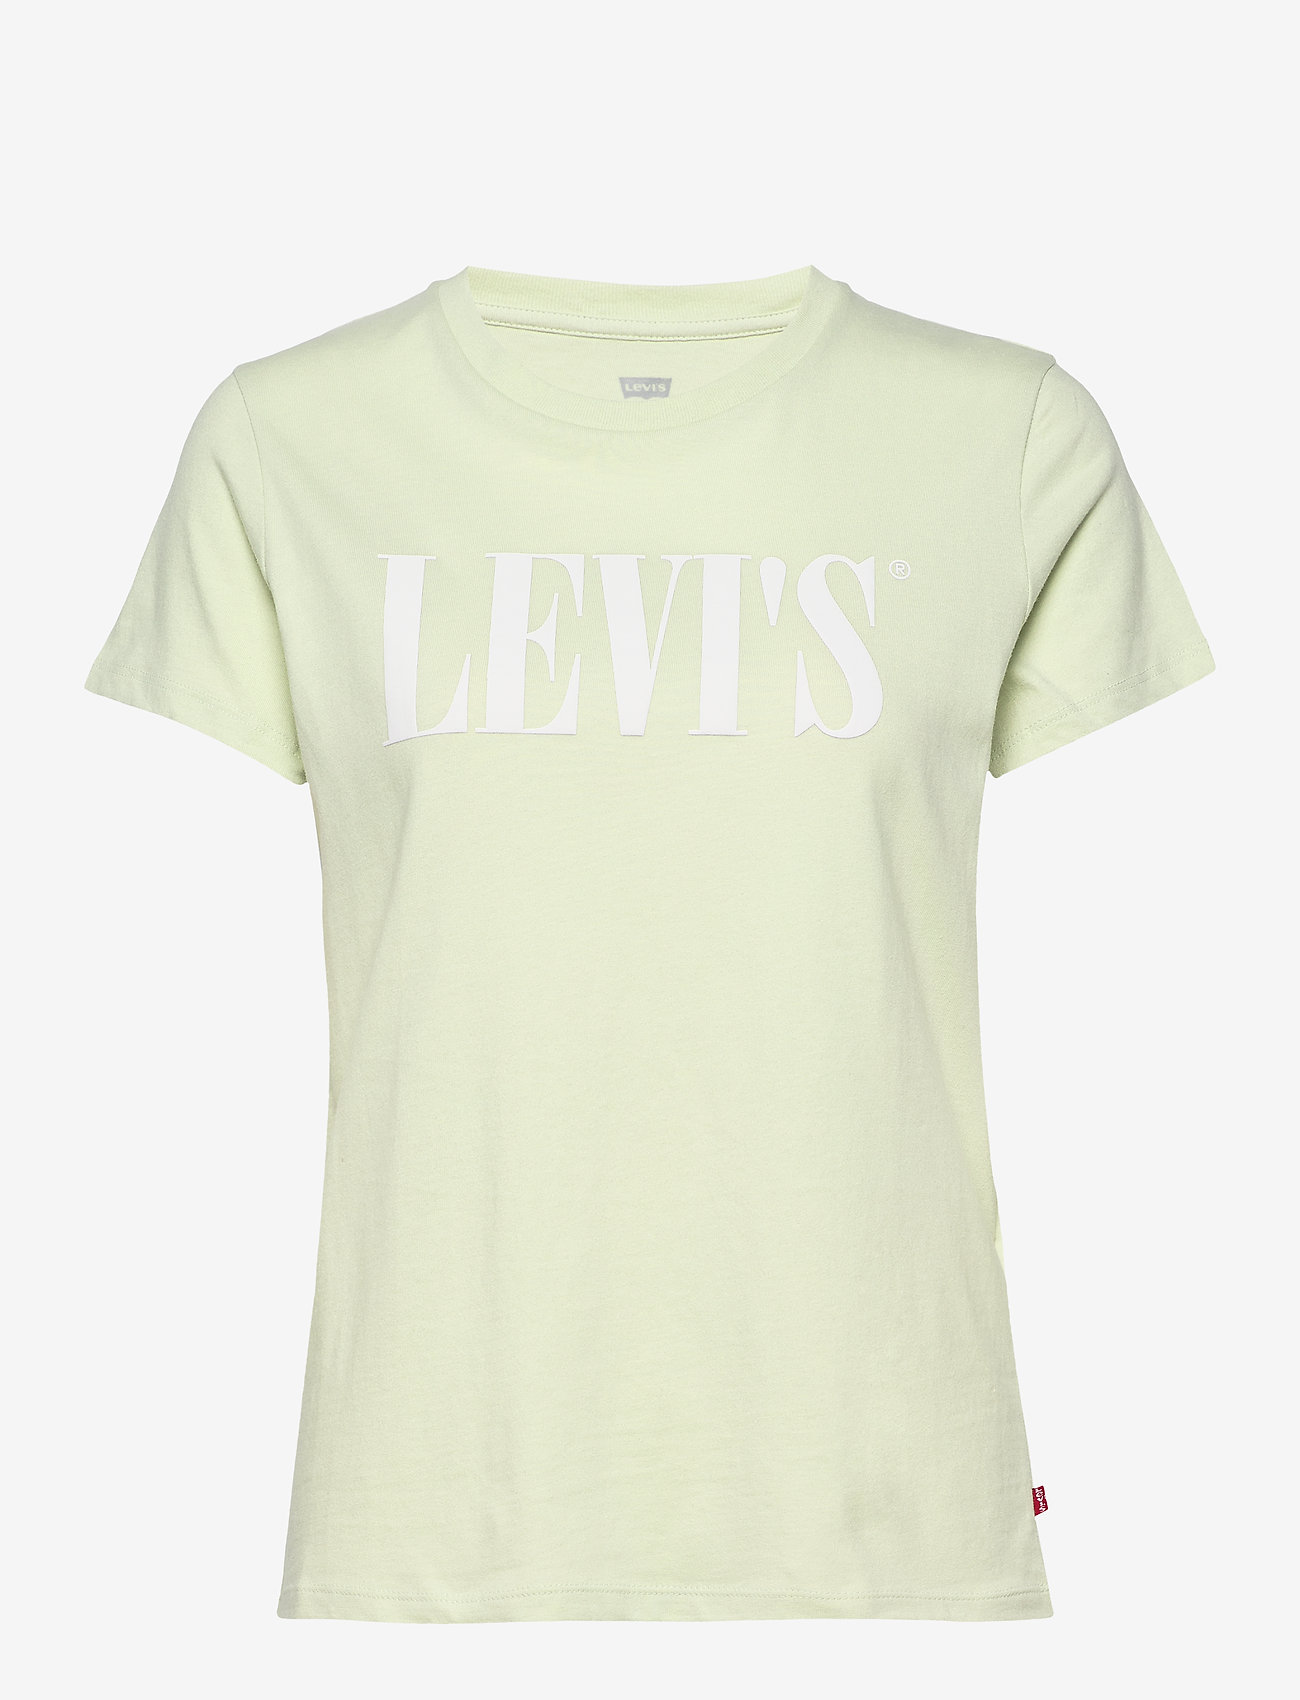 t shirt logo levis